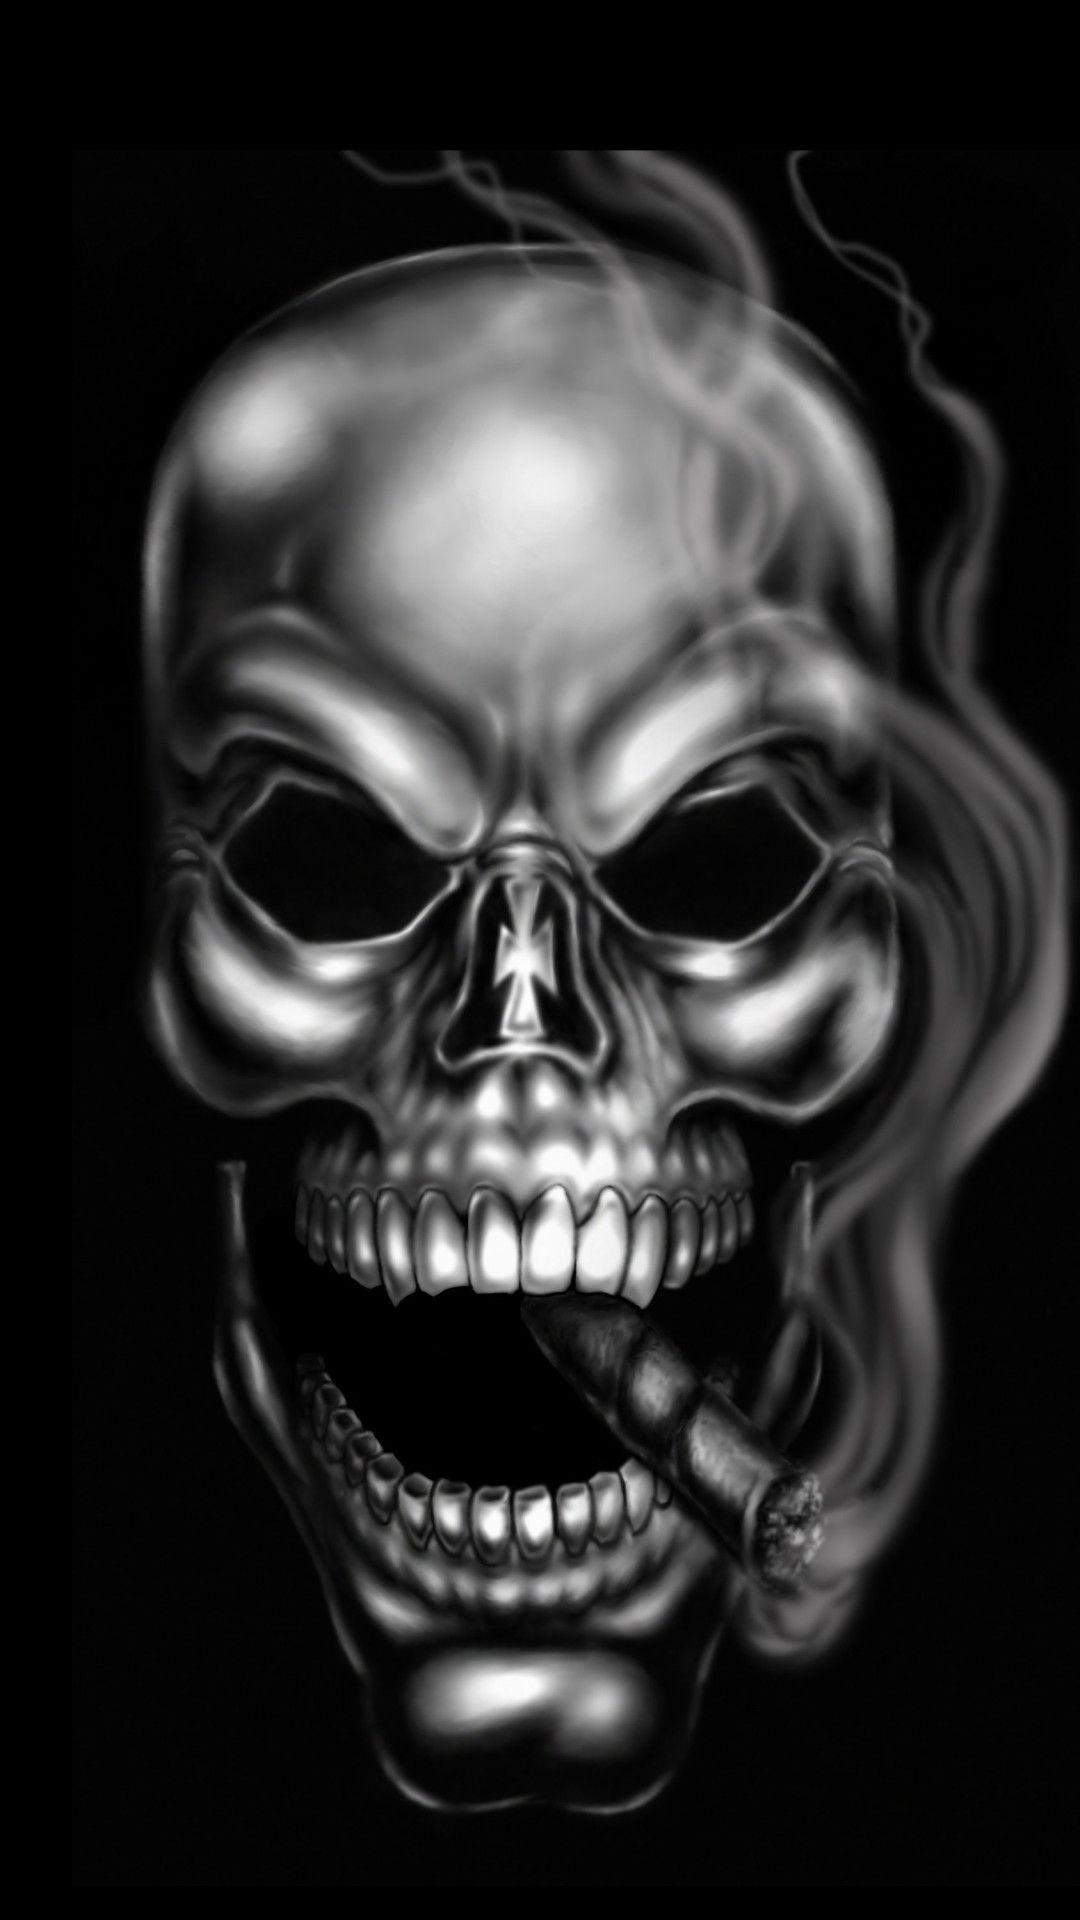 Skull Wallpaper for iPhone